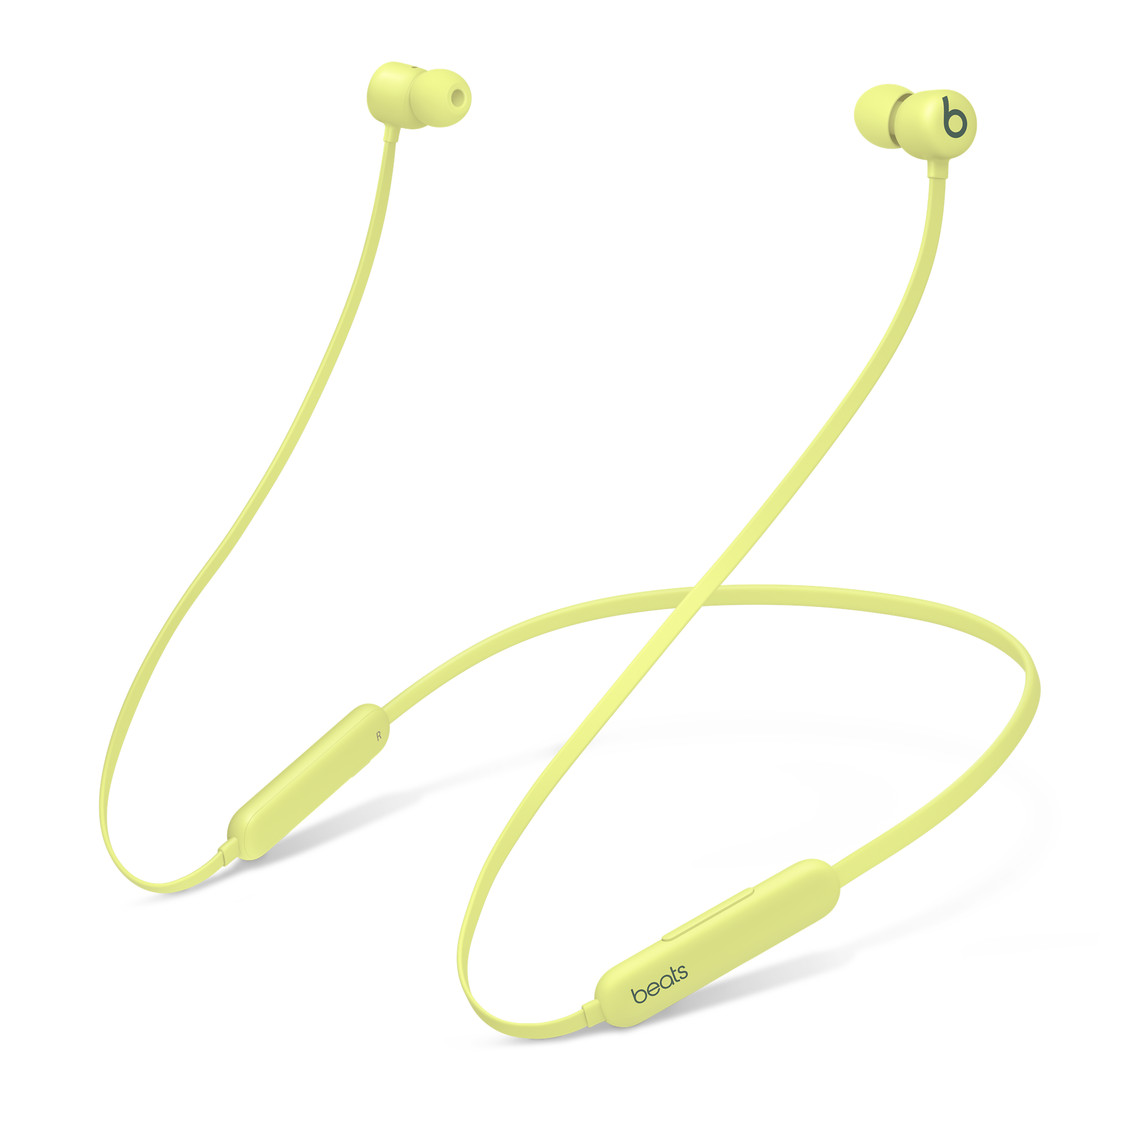 Bezdrátová sluchátka Beats Flex na celý den v citrónově žluté s dvoukomorovým akustickým řešením pro dosažení vynikající separace sterea a přesného podání basů.